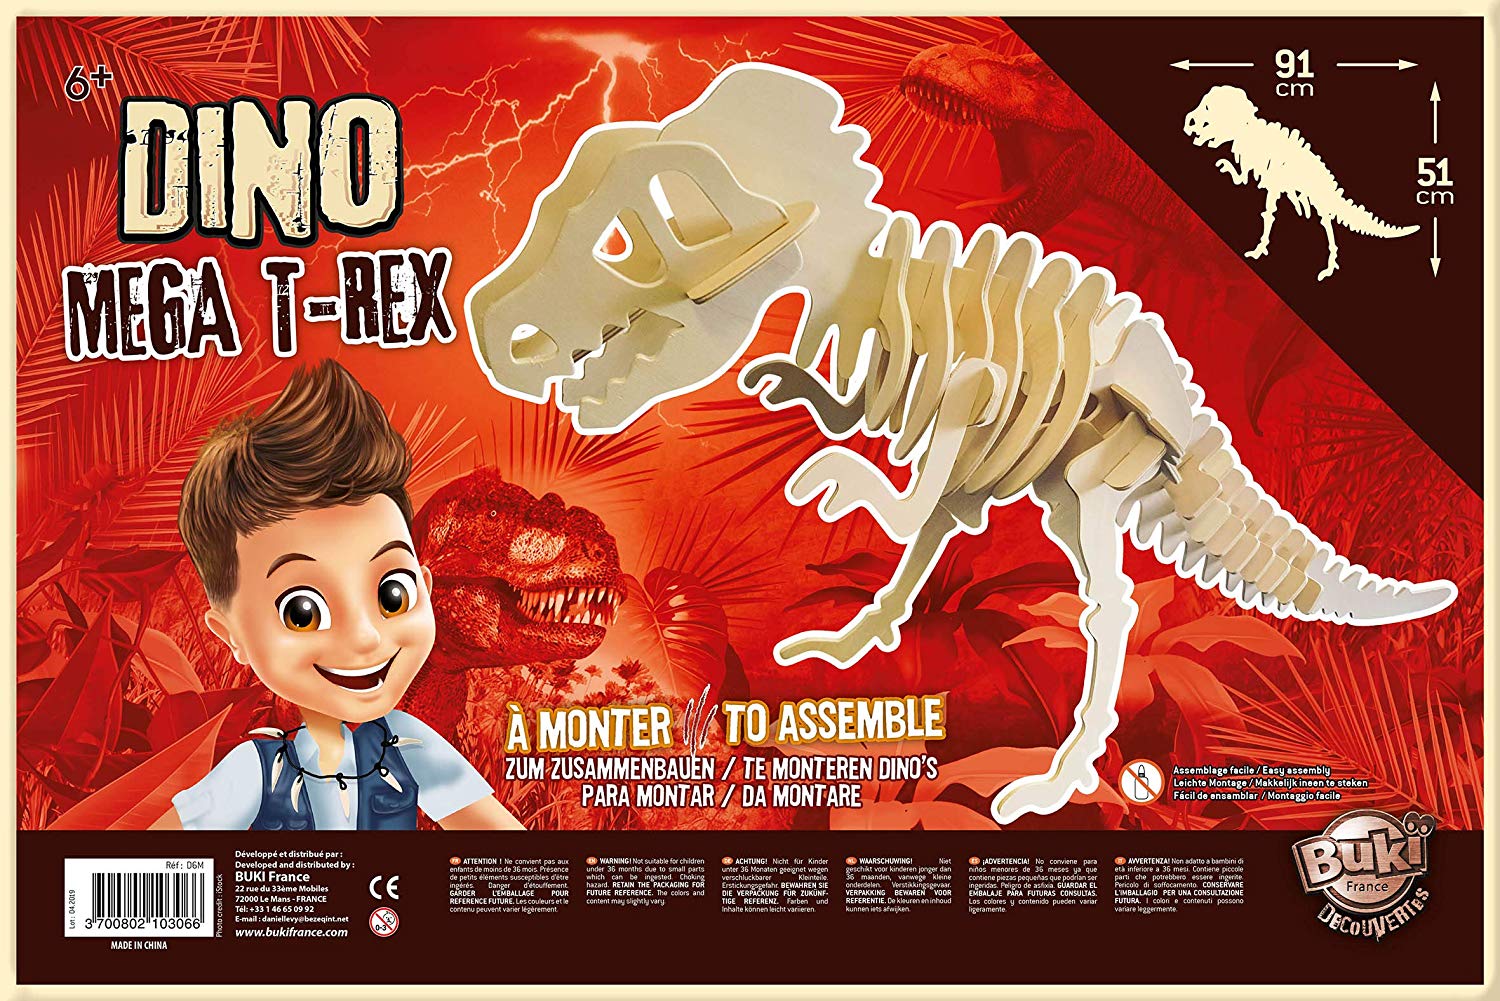 Dino mega t-rex géant